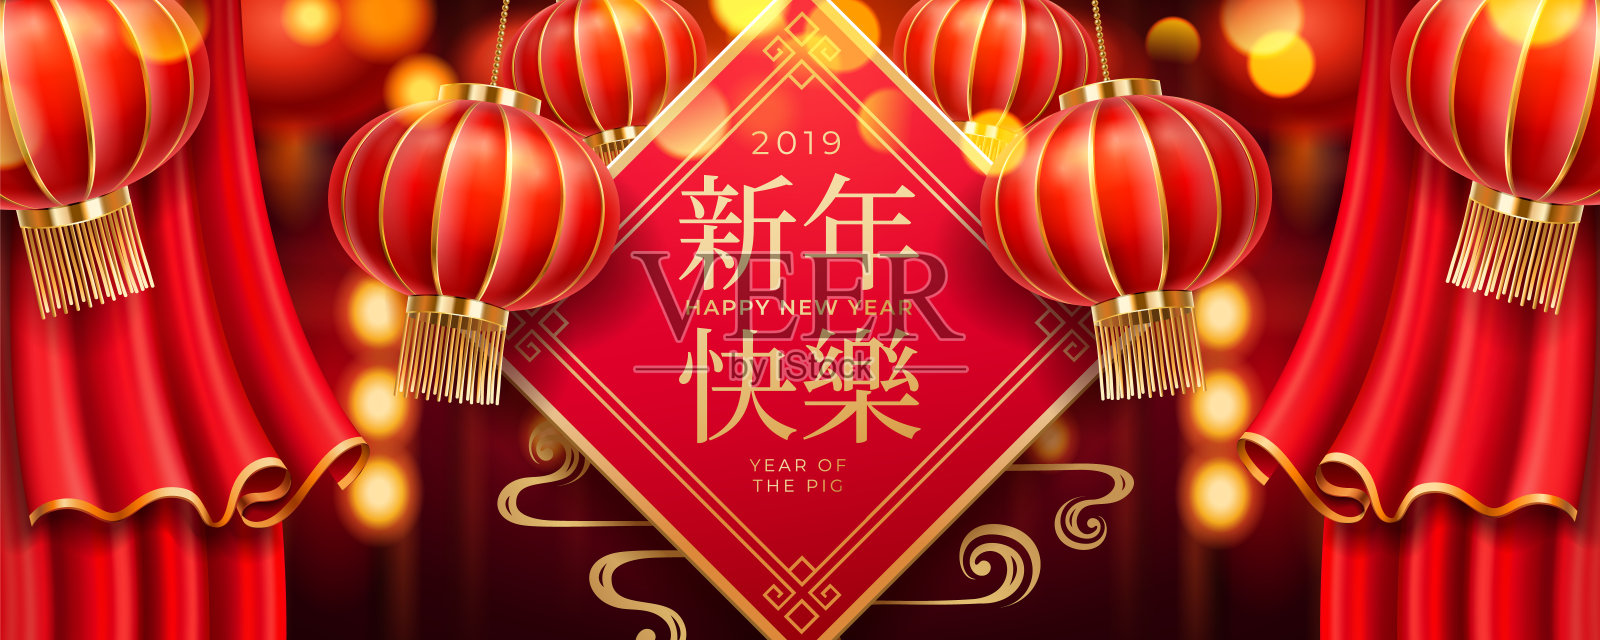 2019年中国新年贺卡设计设计模板素材